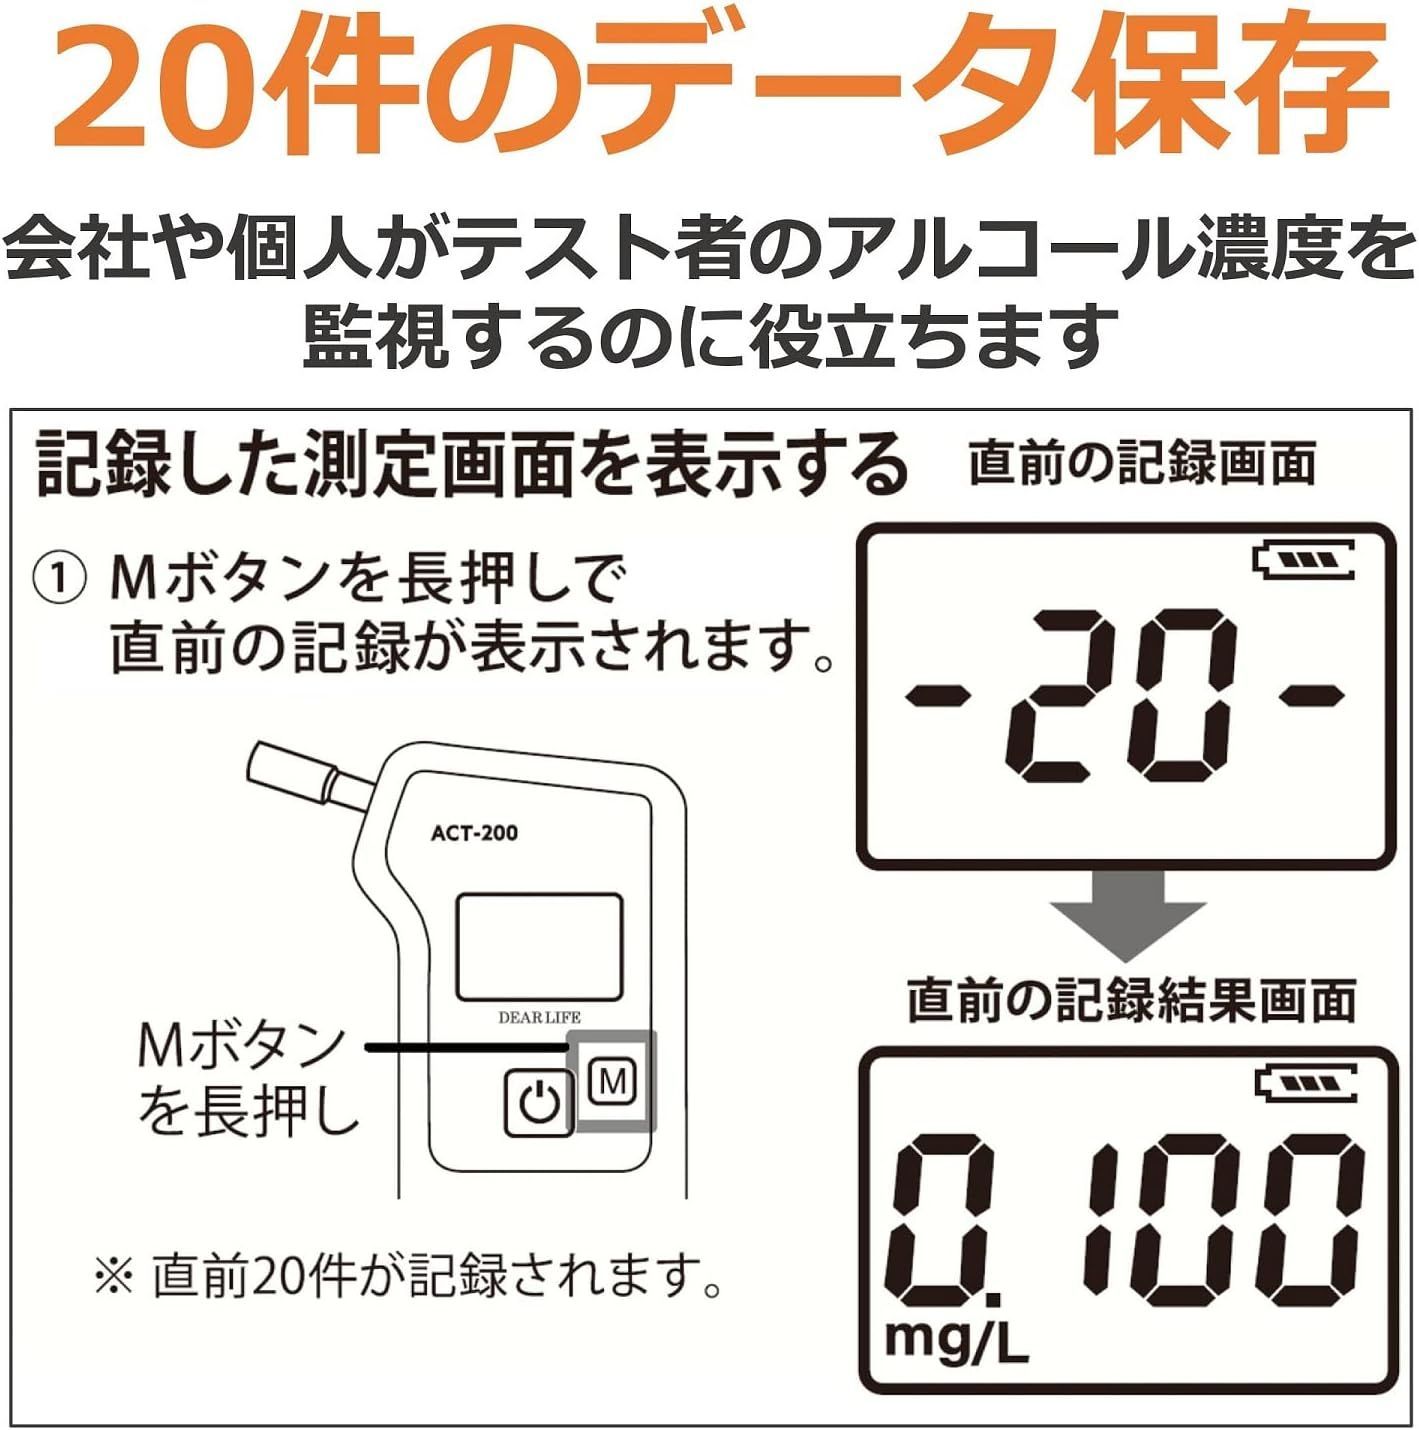 ライノプロダクツ 燃料電池式アルコールチェッカー 日本国内メーカー 5万回の長寿命 業務用 ACT-200 [国家公安委員会が定めるアルコール検知器]  ぶれんどしょっぷ メルカリ